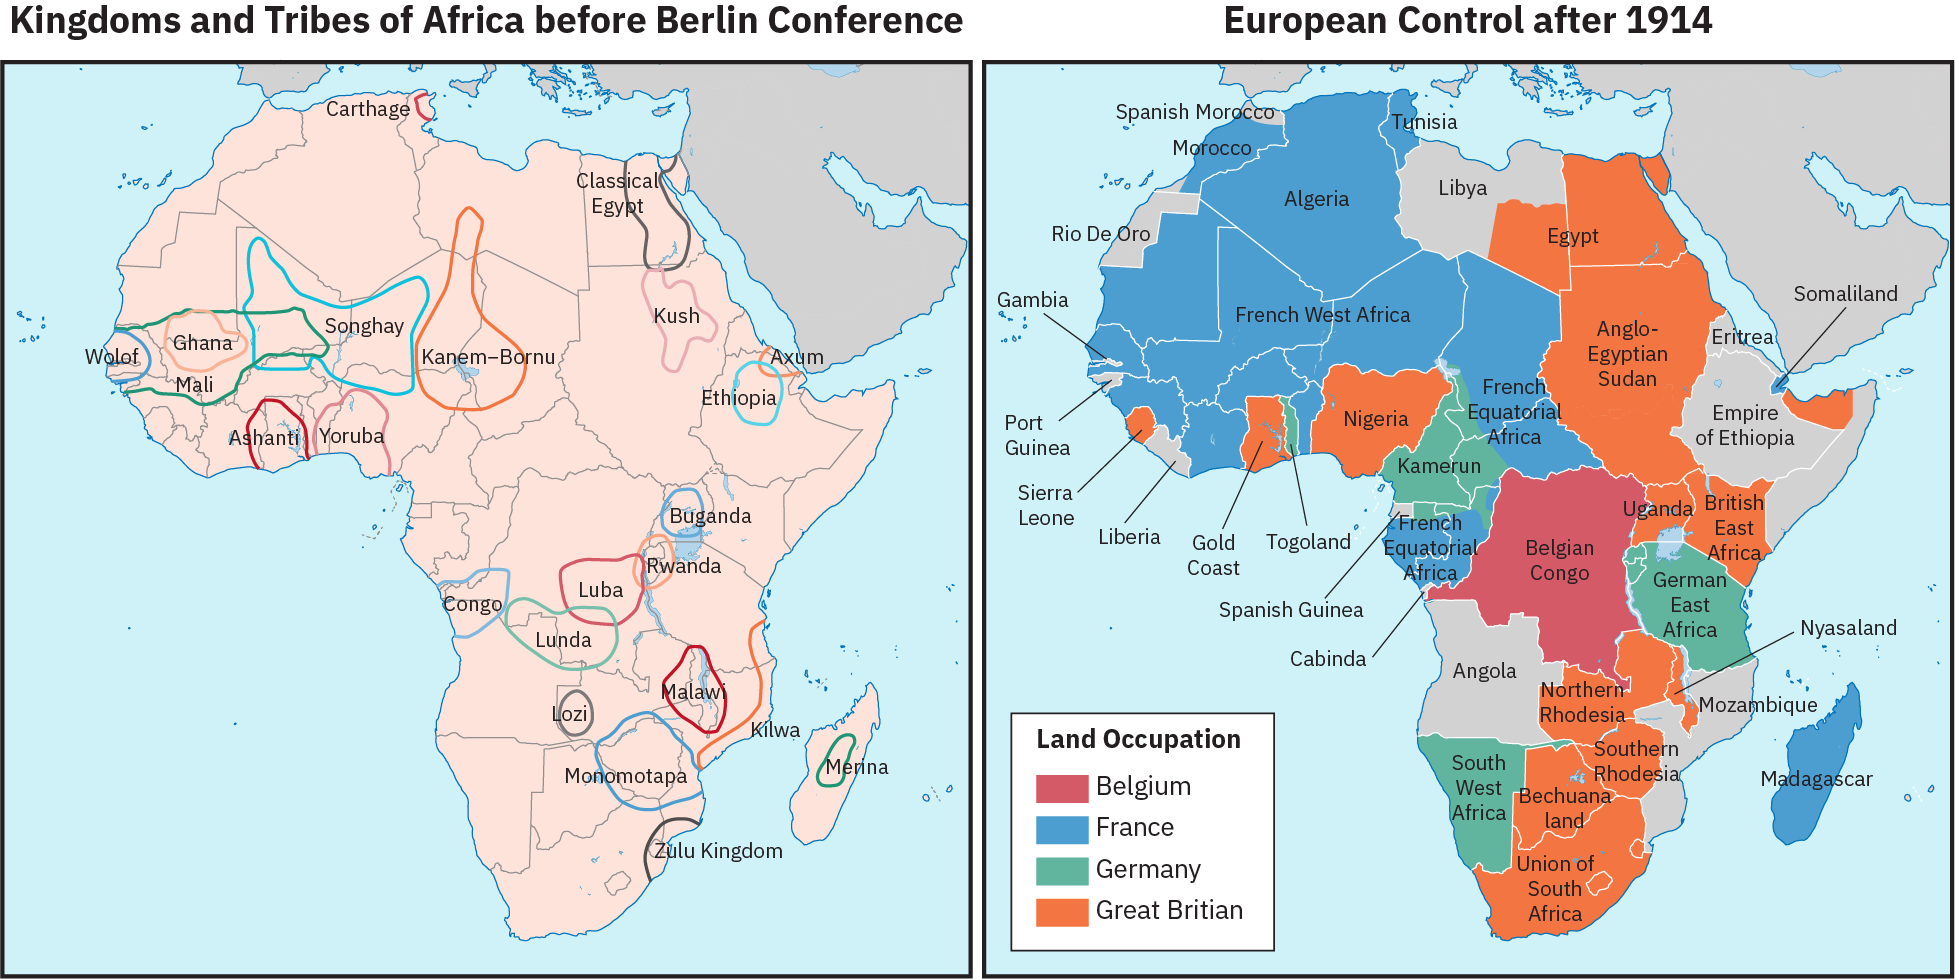 שתי מפות של אפריקה, זו לצד זו. המפה משמאל מסומנת "ממלכות ושבטי אפריקה לפני ועידת ברלין". שטחים שונים מוקפים ומסומנים בשמות של ישויות פוליטיות כמו אשנטי, מצרים הקלאסית, מלאו וממלכת זולו. שטחים אלה אינם עולים בקנה אחד עם גבולות המדינה העכשווית. המפה השנייה מסומנת "שליטה אירופית לאחר 1914". מפה זו מציגה אזורים של כיבוש קרקעות על ידי בלגיה, צרפת, גרמניה או בריטניה הגדולה, אשר אכן תואמים את גבולות המדינה העכשווית.